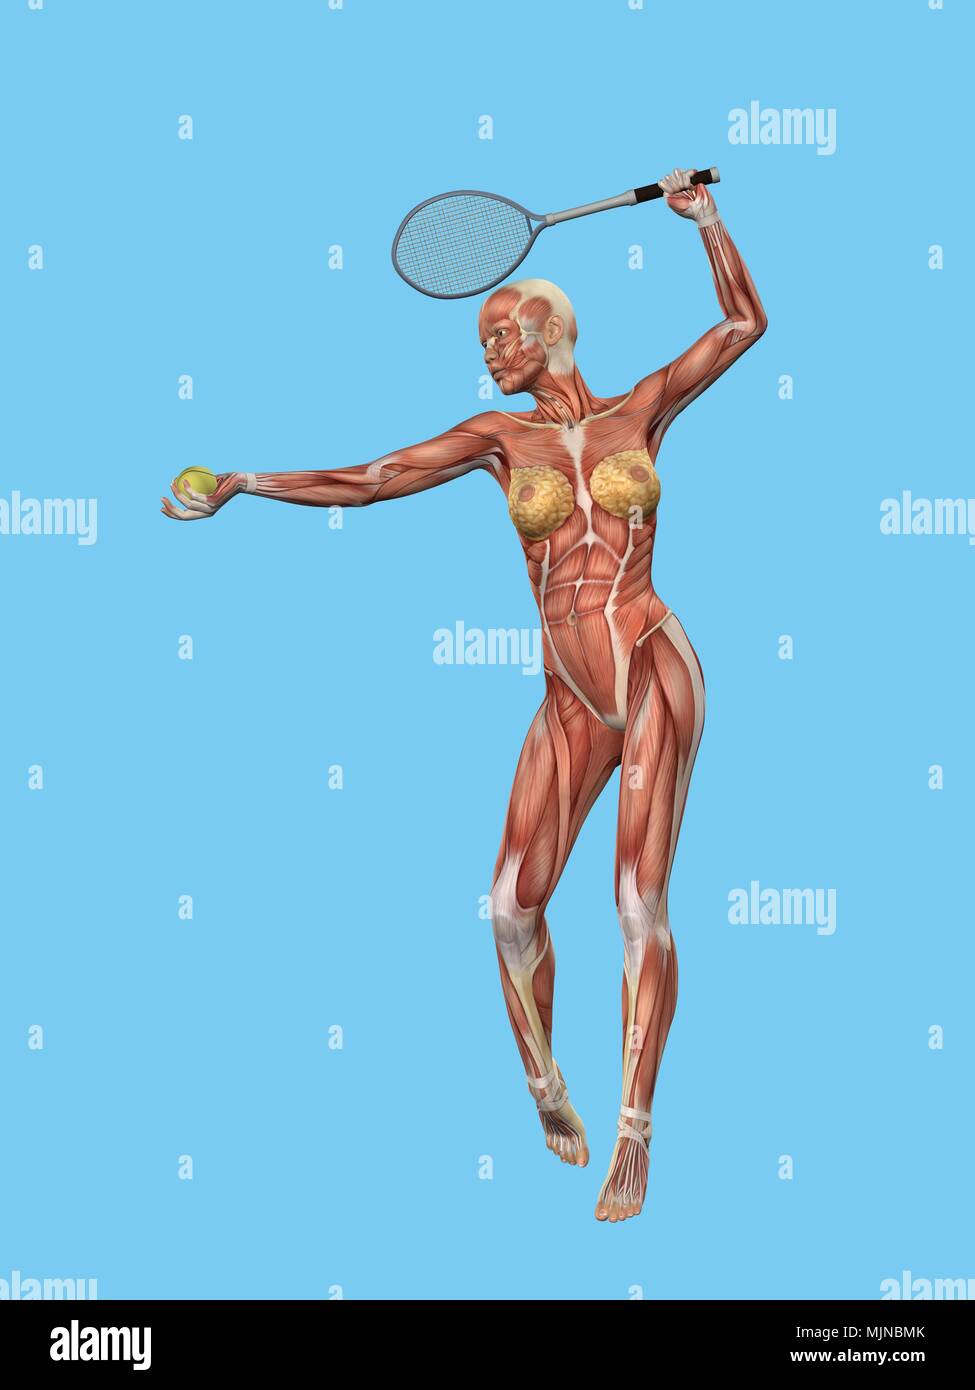 Anatomia di donna giocando a tennis. Foto Stock